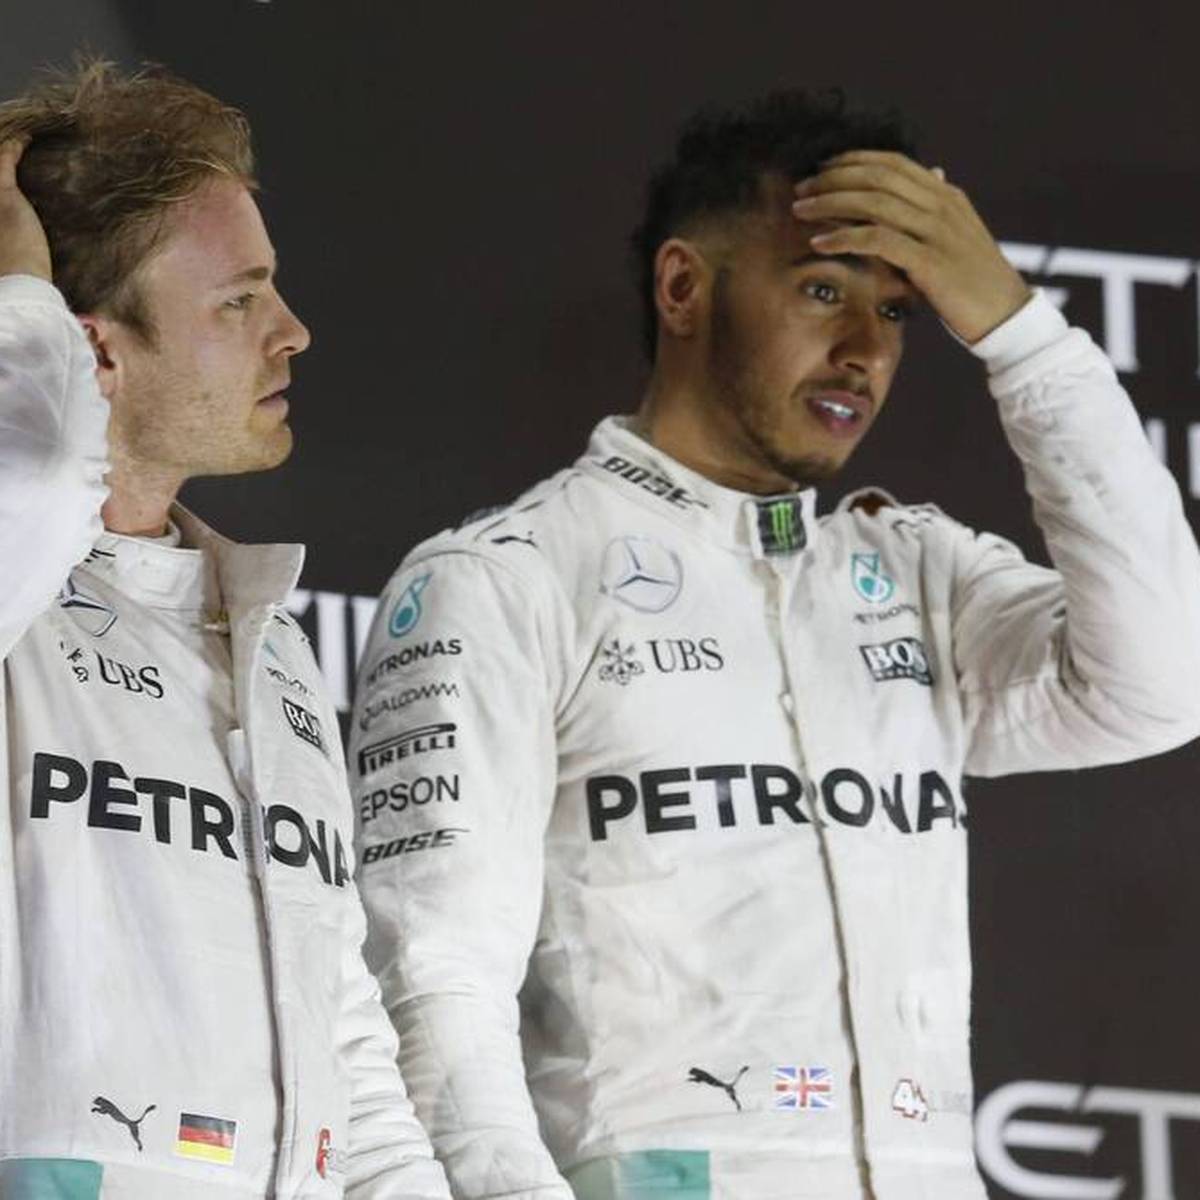 Mercedes-Teamchef Toto Wolff schildert, wie der Konkurrenzkampf zwischen Lewis Hamilton und Nico Rosberg ihn beinahe zum Äußersten zwang.